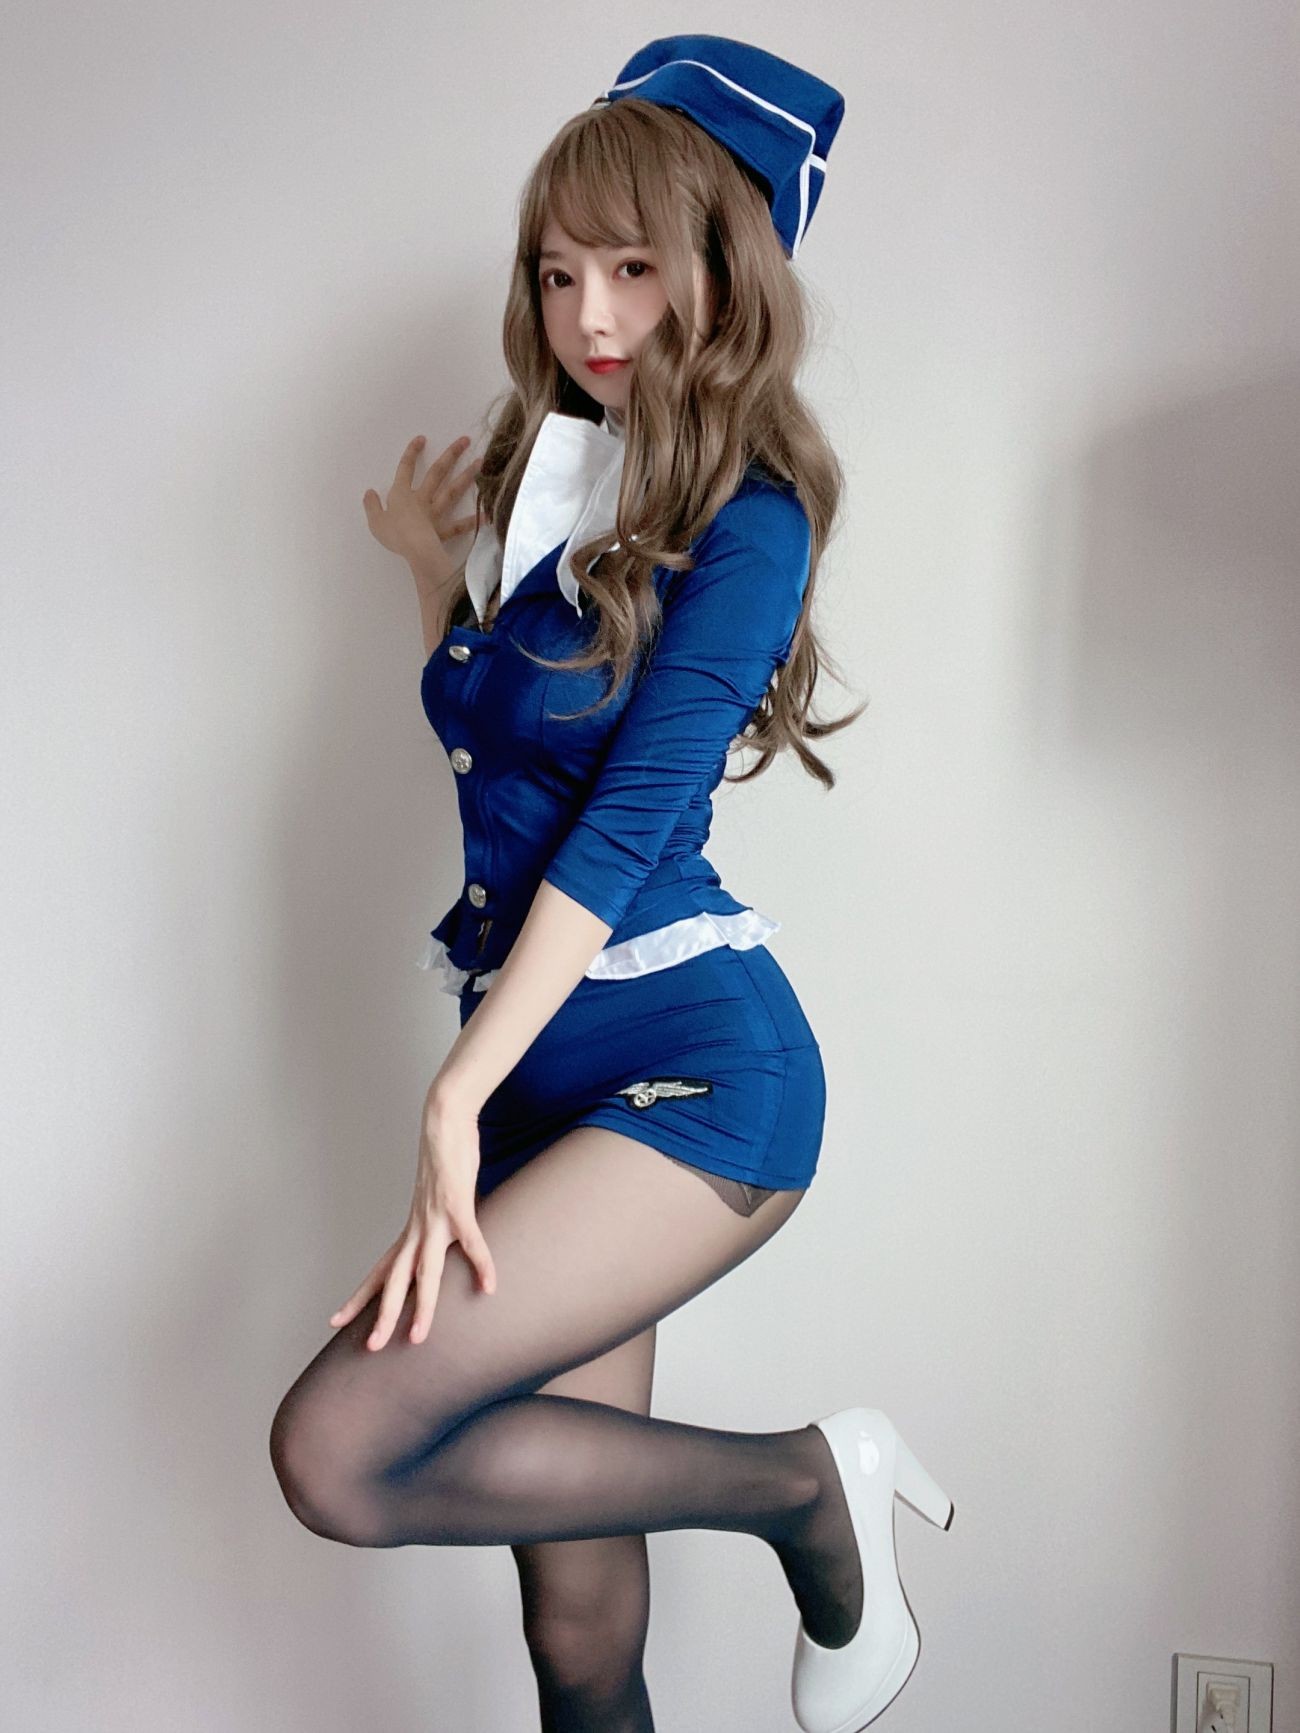 微博美少女51酱性感写真蓝色制服装 (15)